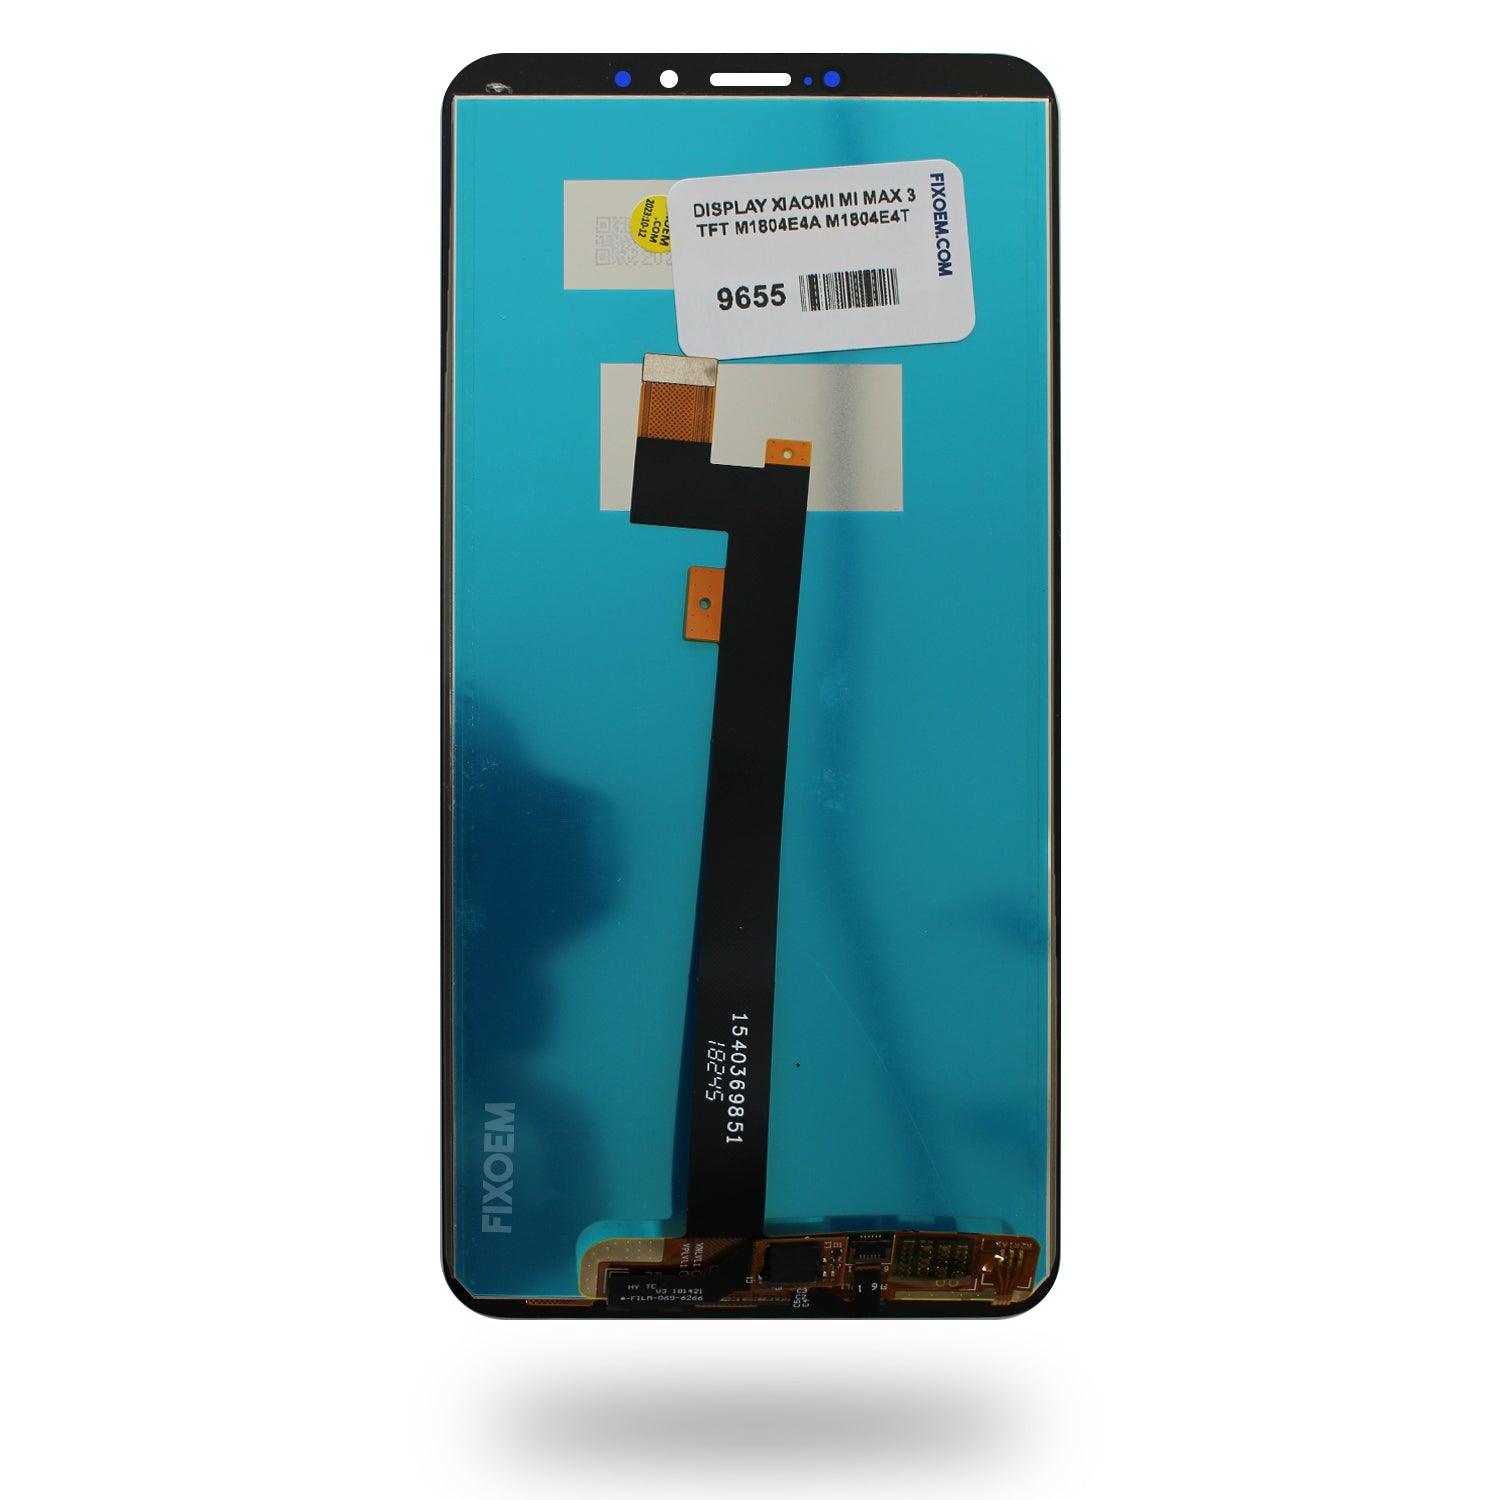 Display Xiaomi Mi Max 3 IPS M1804E4A M1804E4T a solo $ 490.00 Refaccion y puestos celulares, refurbish y microelectronica.- FixOEM